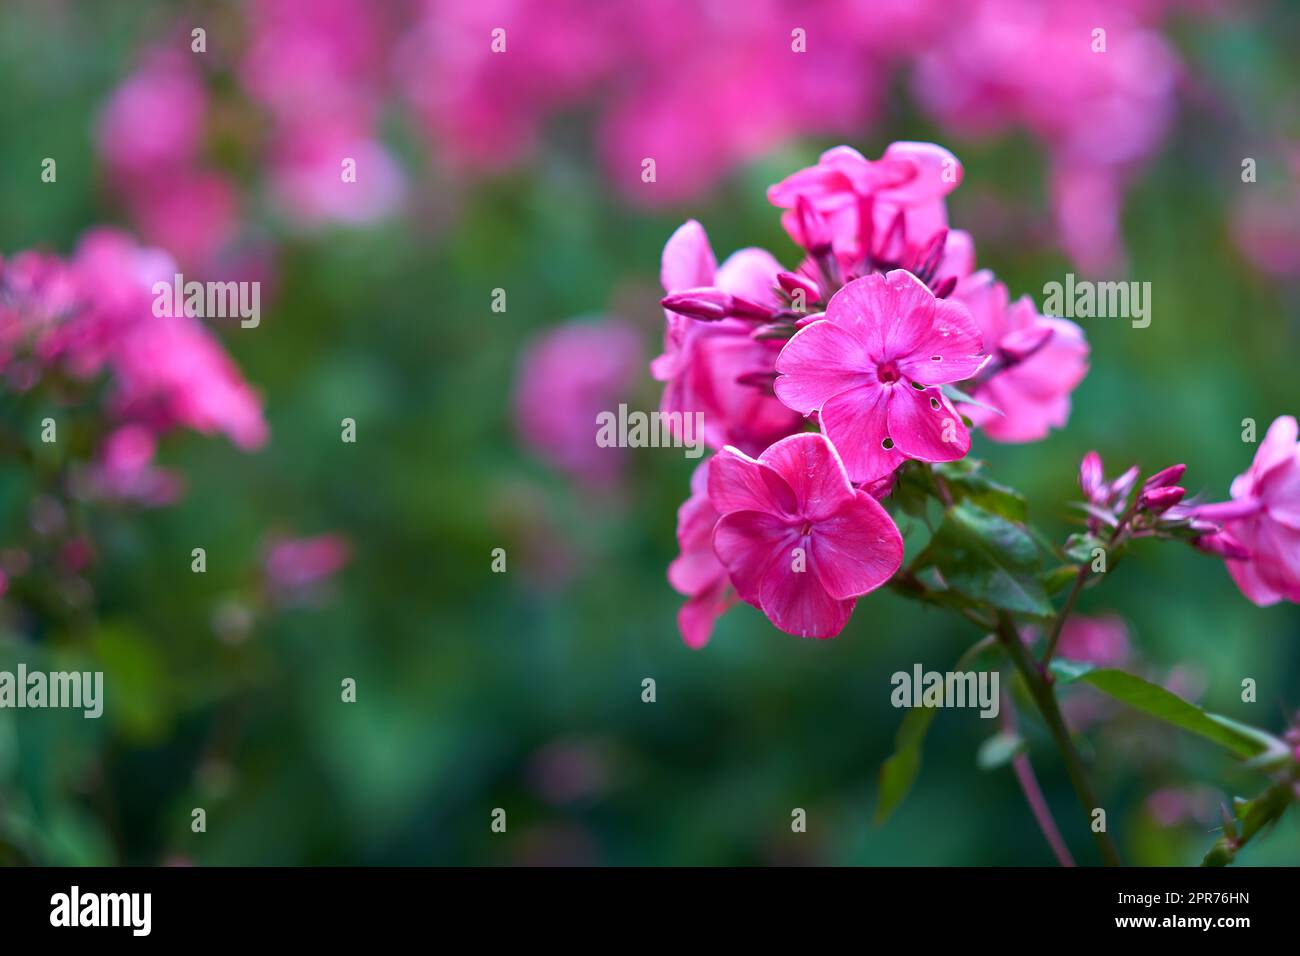 Gros plan de la fleur de mousche rose poussant sur un arbre dans un jardin en été. Les plantes fleuries fleurissent sur les branches dans une cour verdoyante au printemps. Bush de fleurs de printemps bourgeonnant dans une cour Banque D'Images